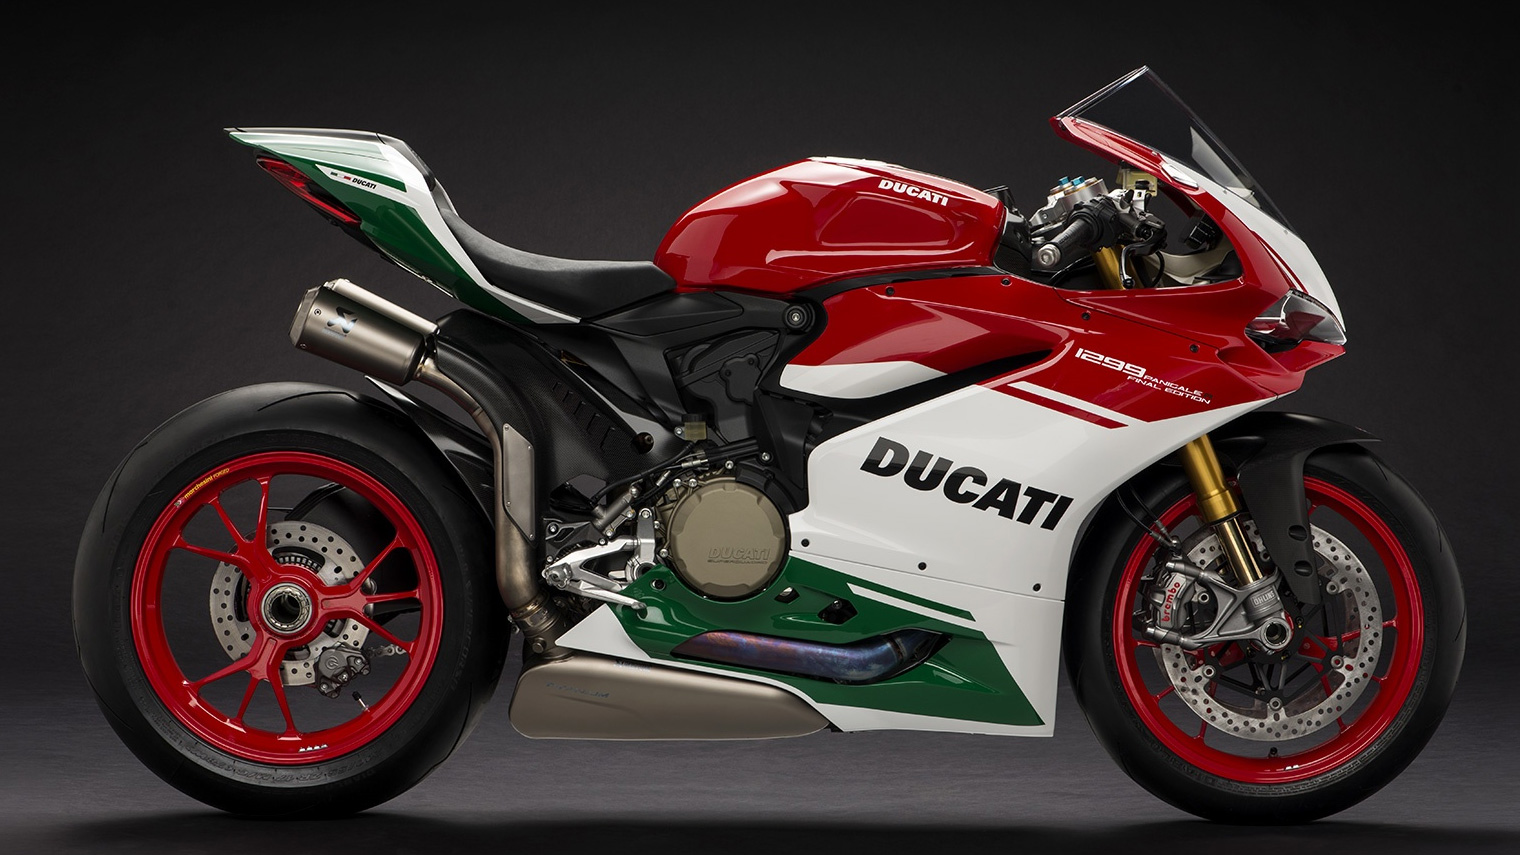 2017 Ducati 1299 Panigale R Final Edition for sale at Ducati Preston, Lancashire, Scotland